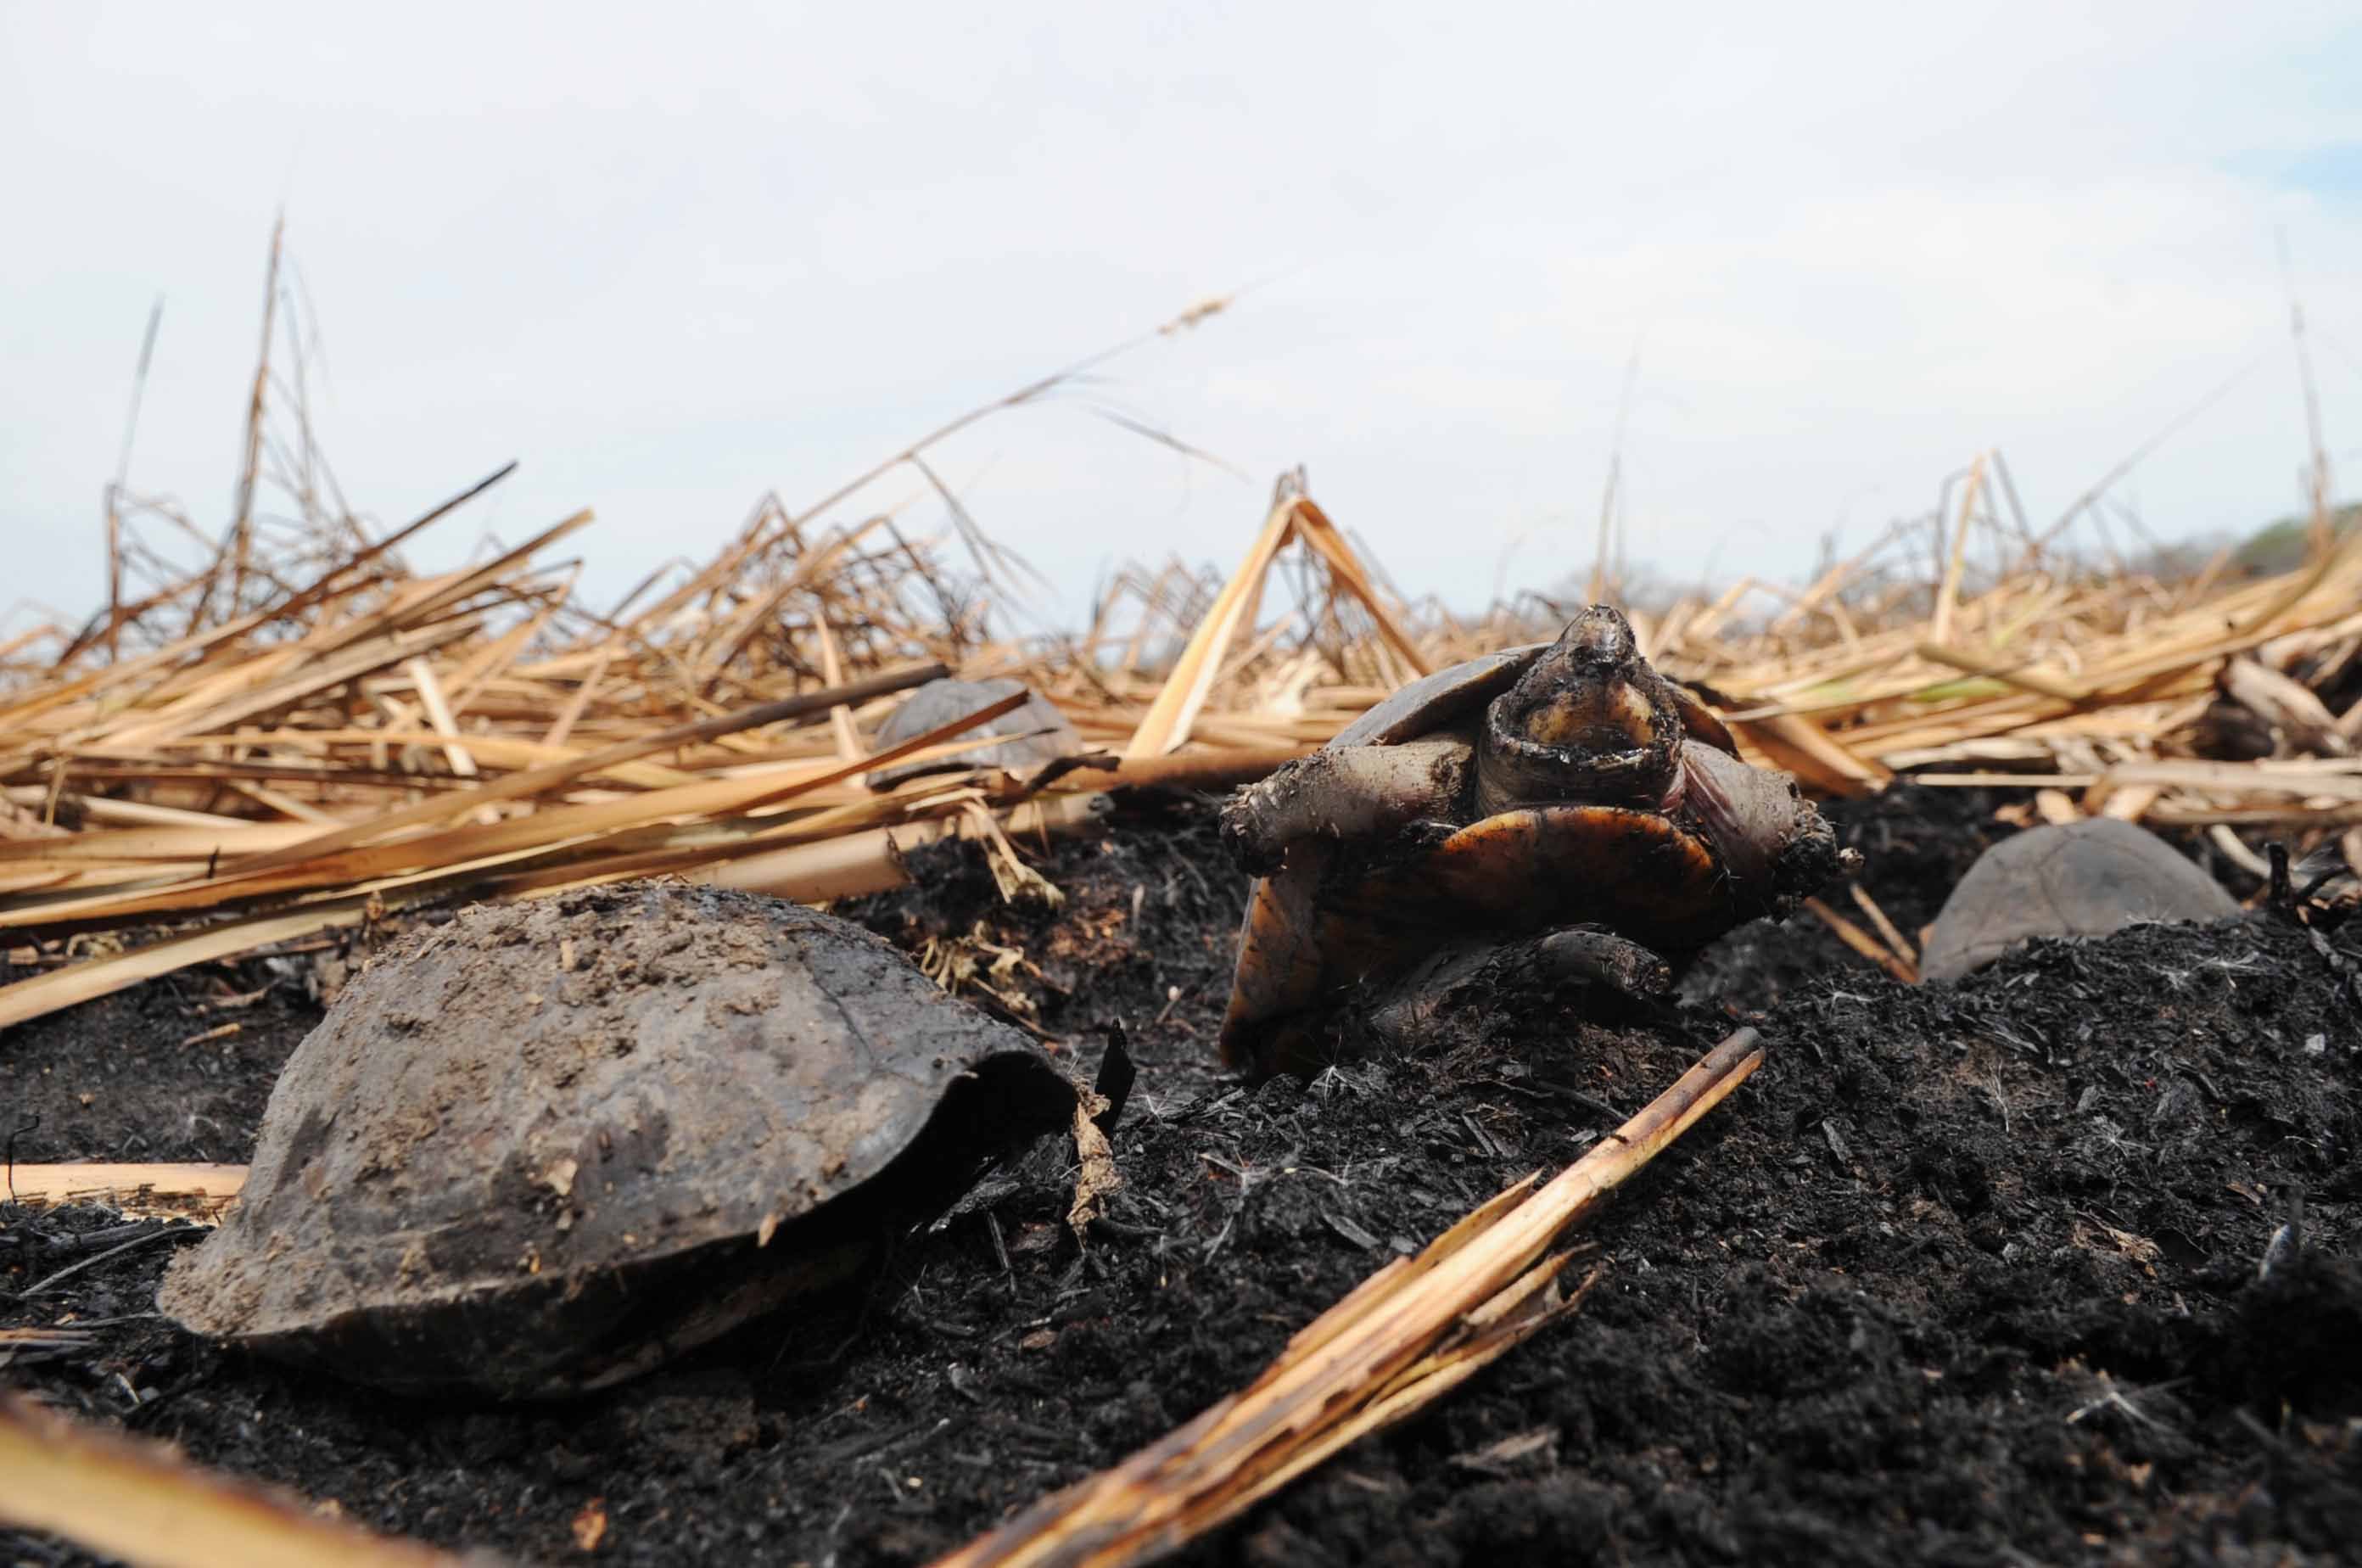 En esta fotografía se observan algunas tortugas consumidas por el fuego durante un incendio forestal ocurrido este año. Especies como esta figuran entre las principales afectadas por este tipo de emergencia.  Foto: